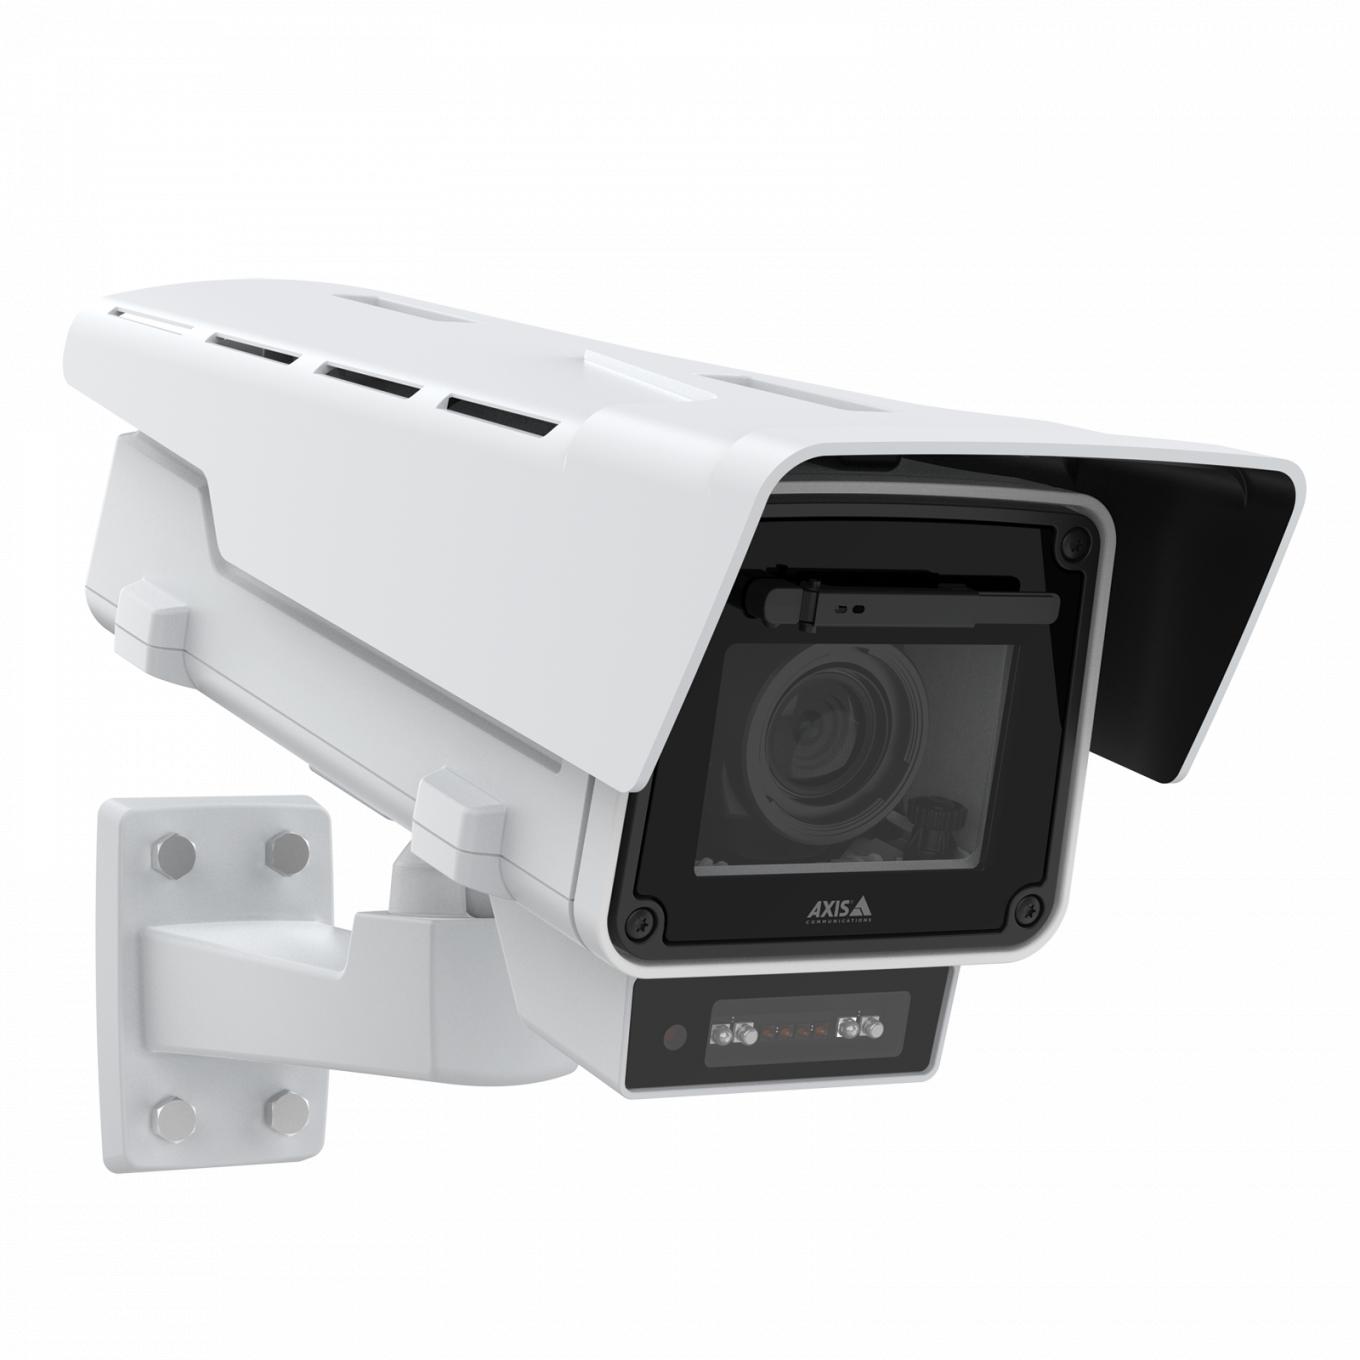 AXIS Q1656-LE Box Camera dall'angolo destro